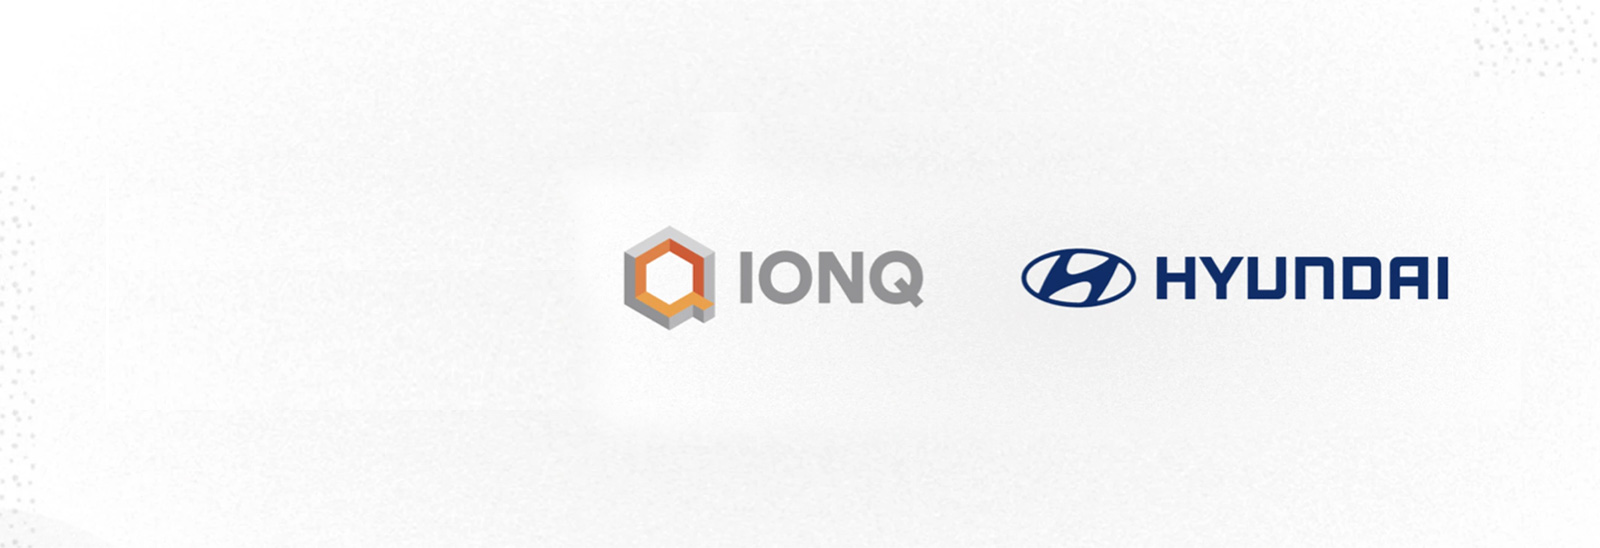 Logos de IONQ y Hyundai